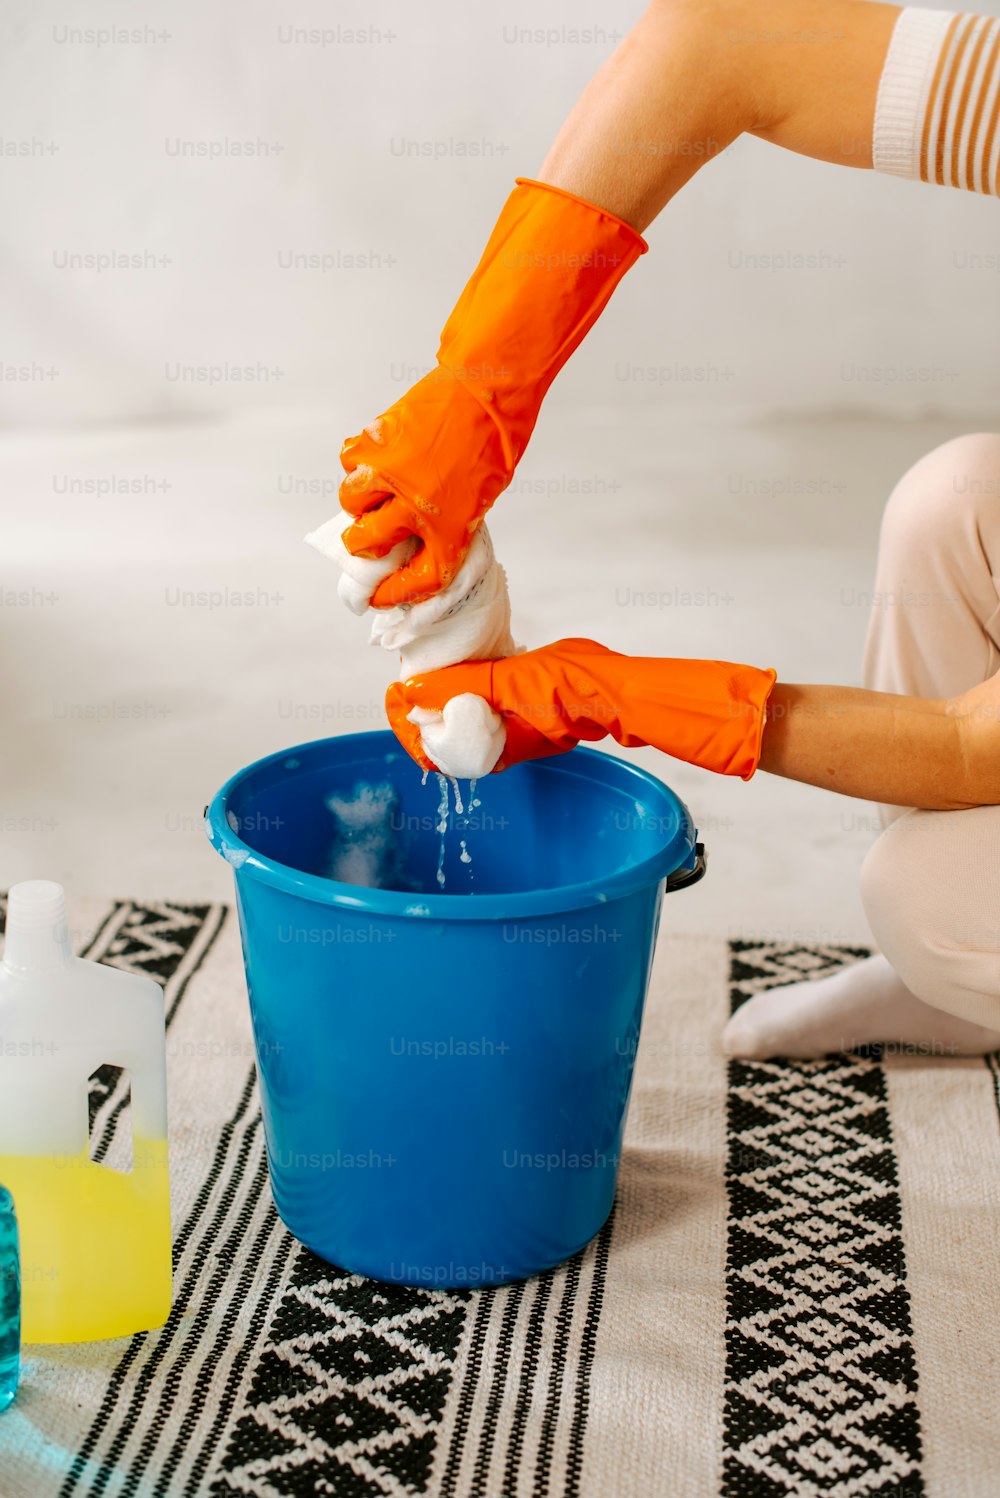 オレンジ色の手袋をはめた人が青いバケツを掃除している